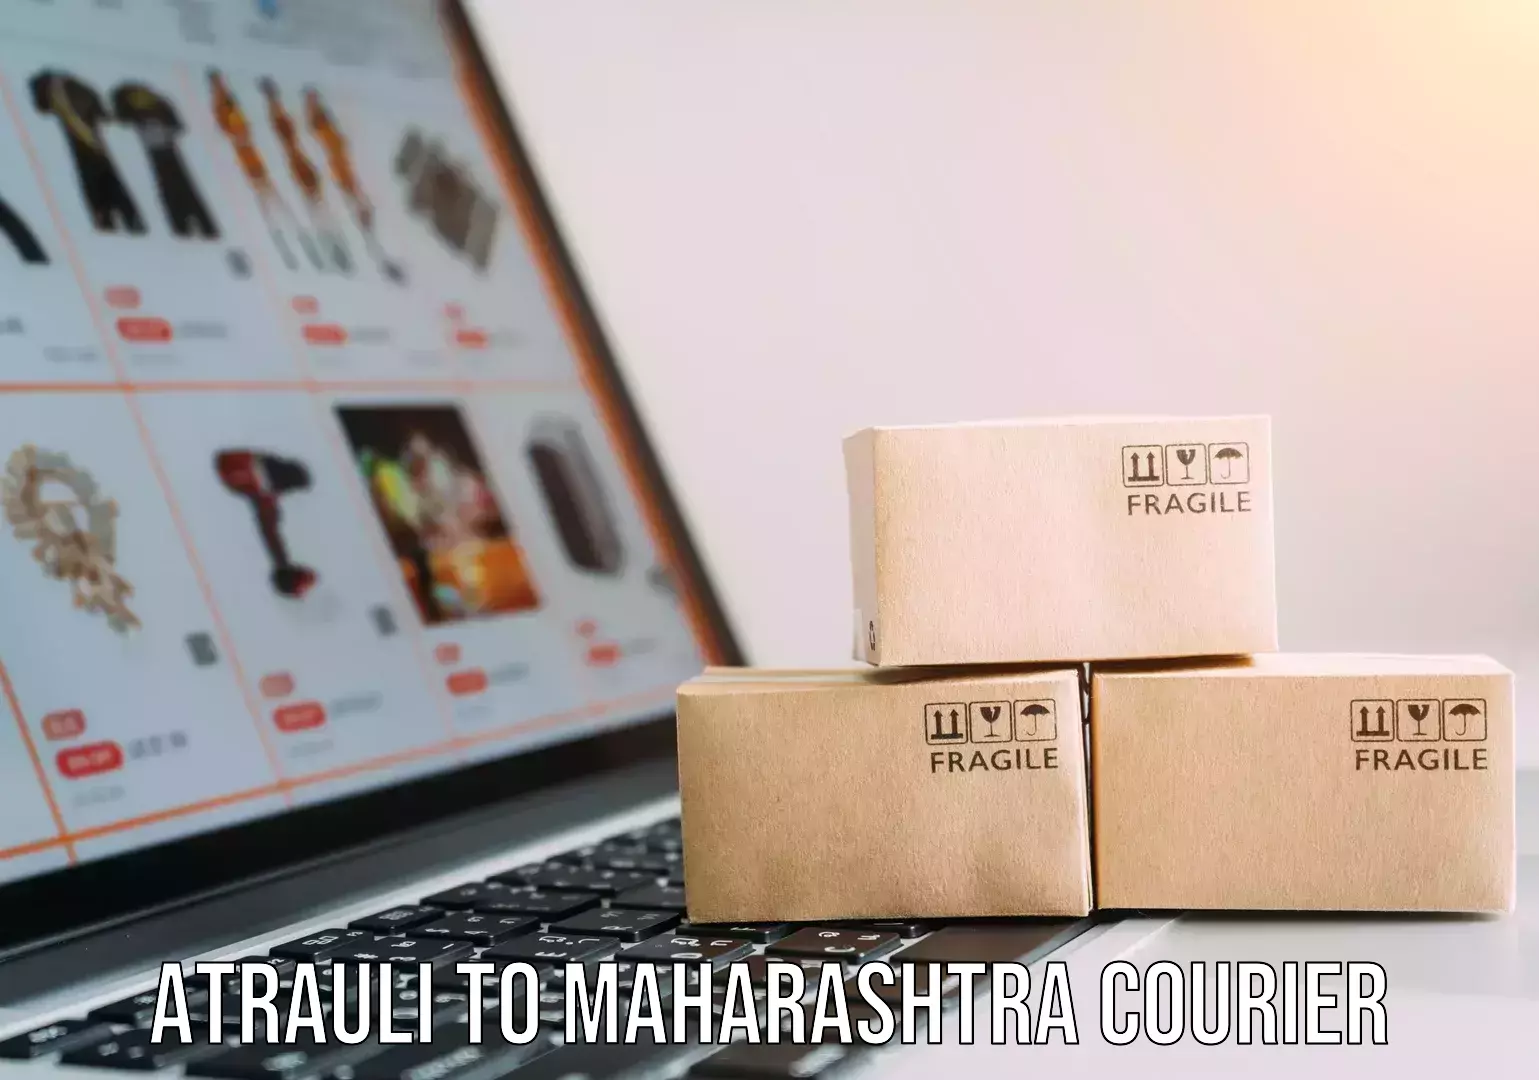 Fast delivery service Atrauli to Maharashtra